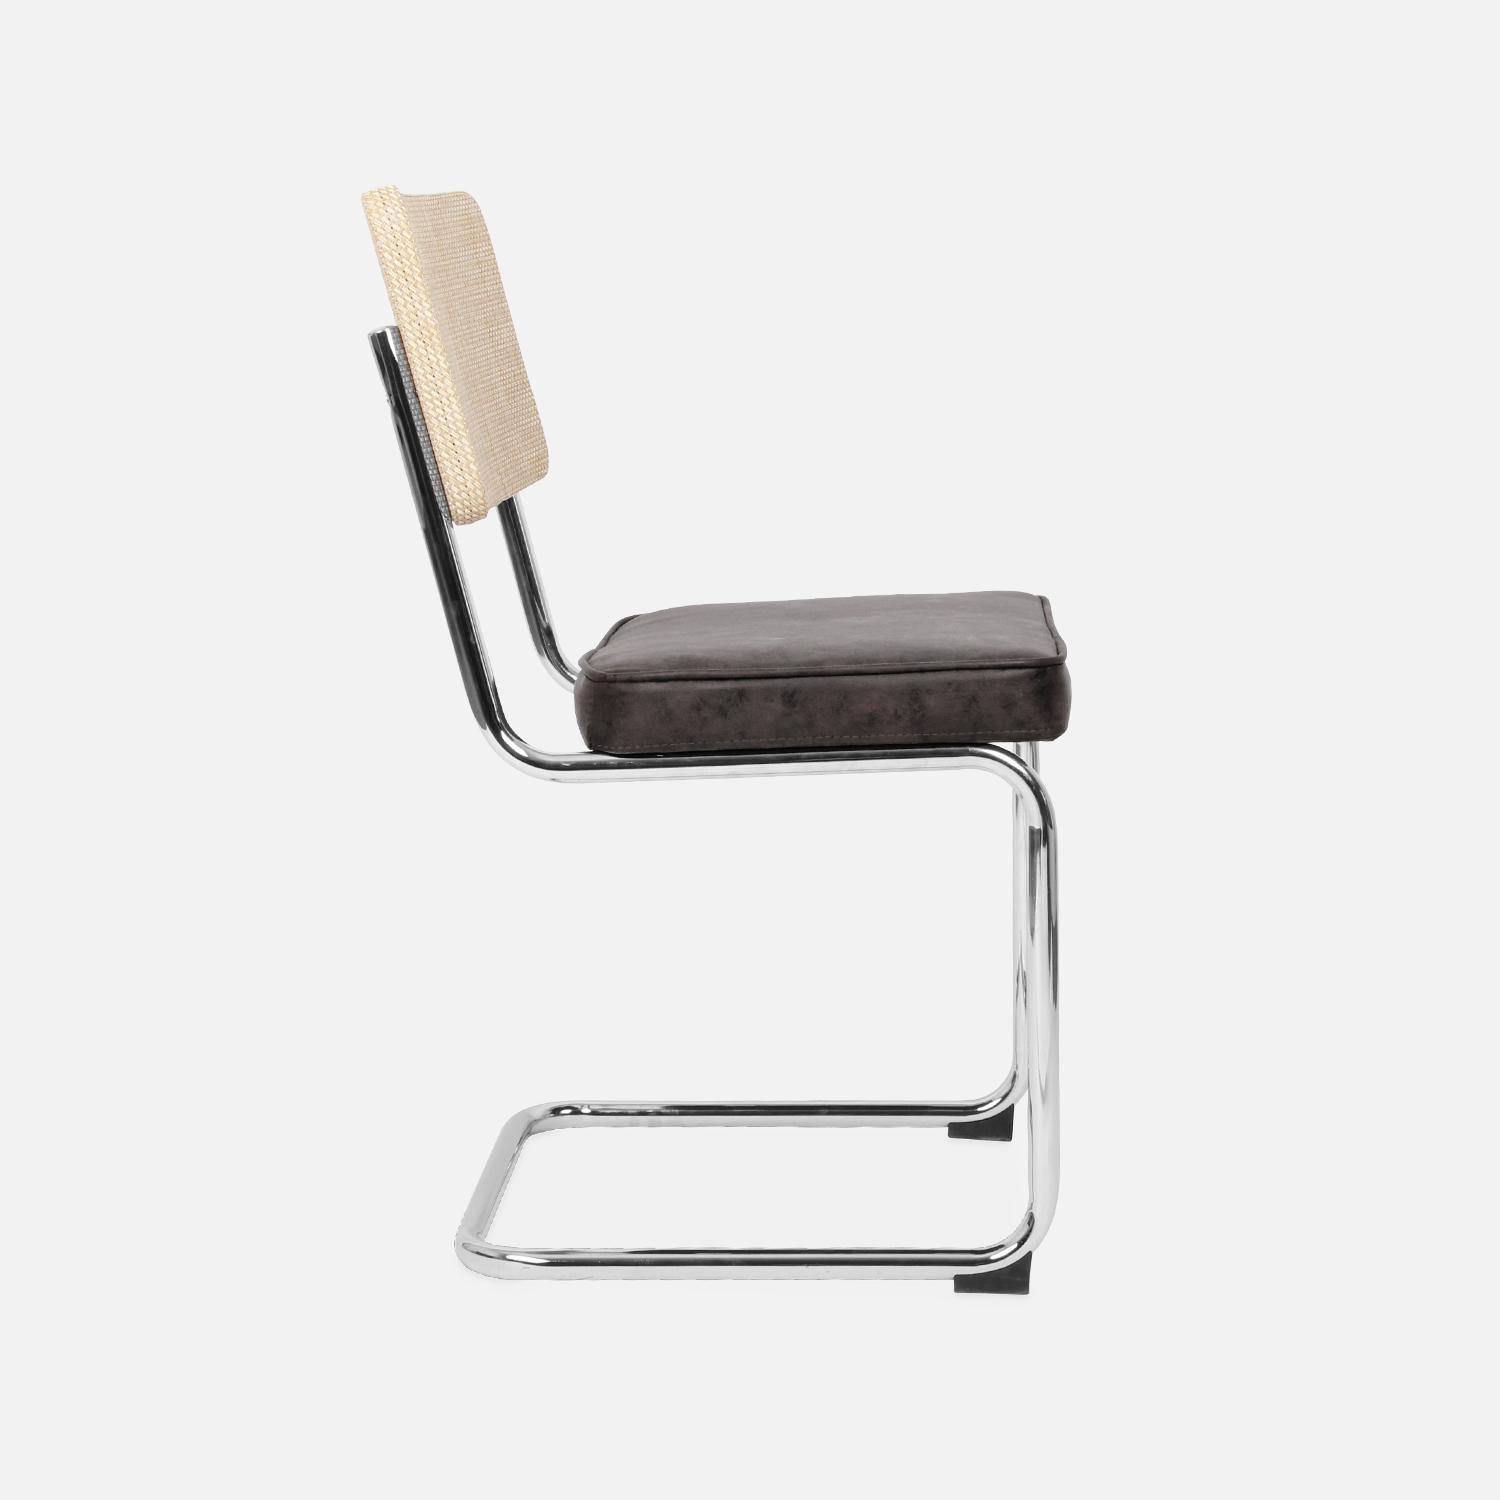 2 cadeiras cantilever - Maja - tecido preto e resina com efeito de vime, 46 x 54,5 x 84,5 cm Photo6